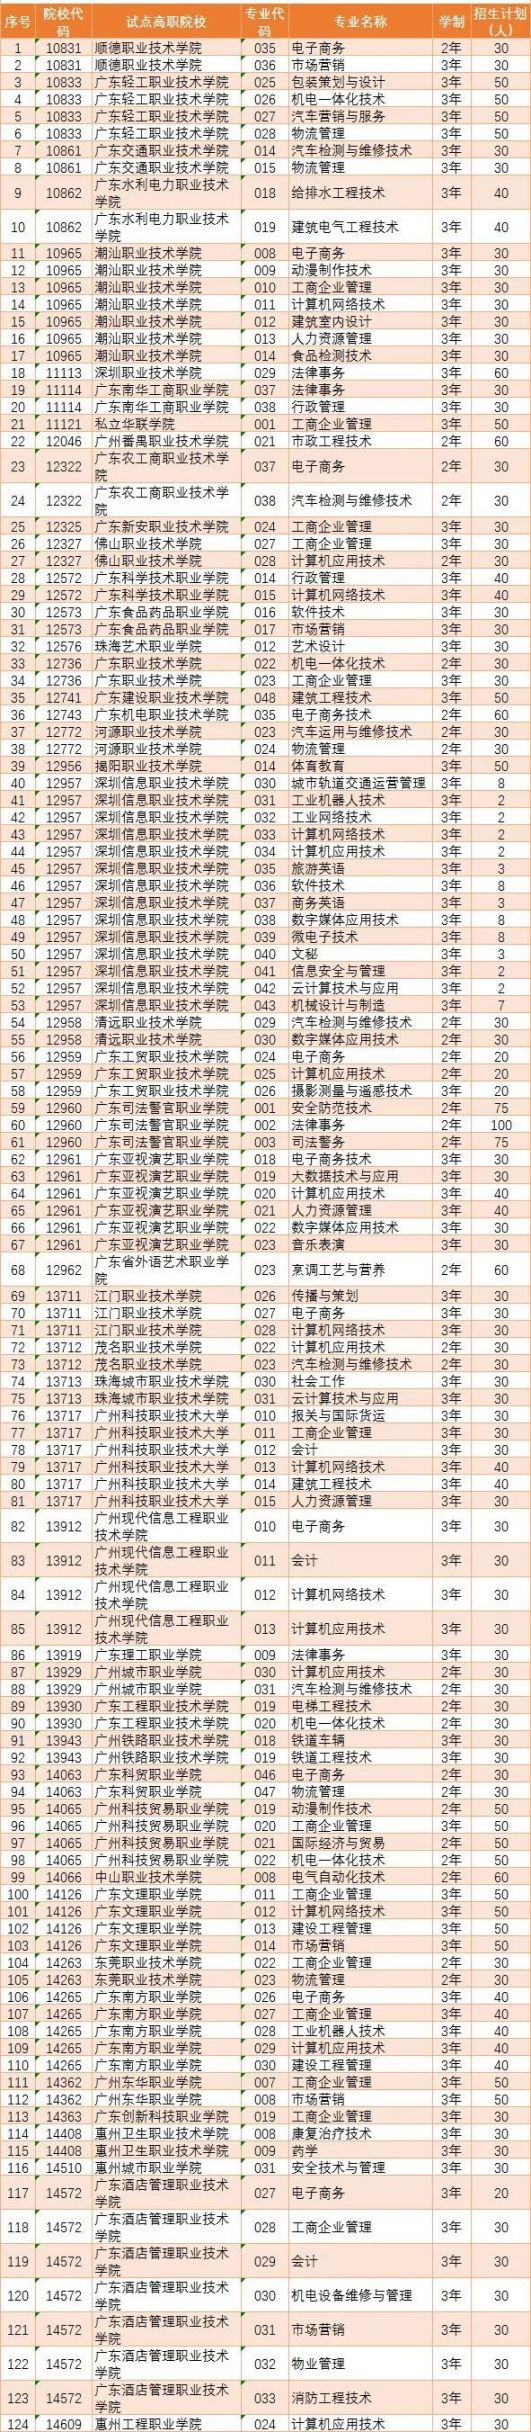 广东省2019年第二期高职扩招正式开始报名 附招生计划表